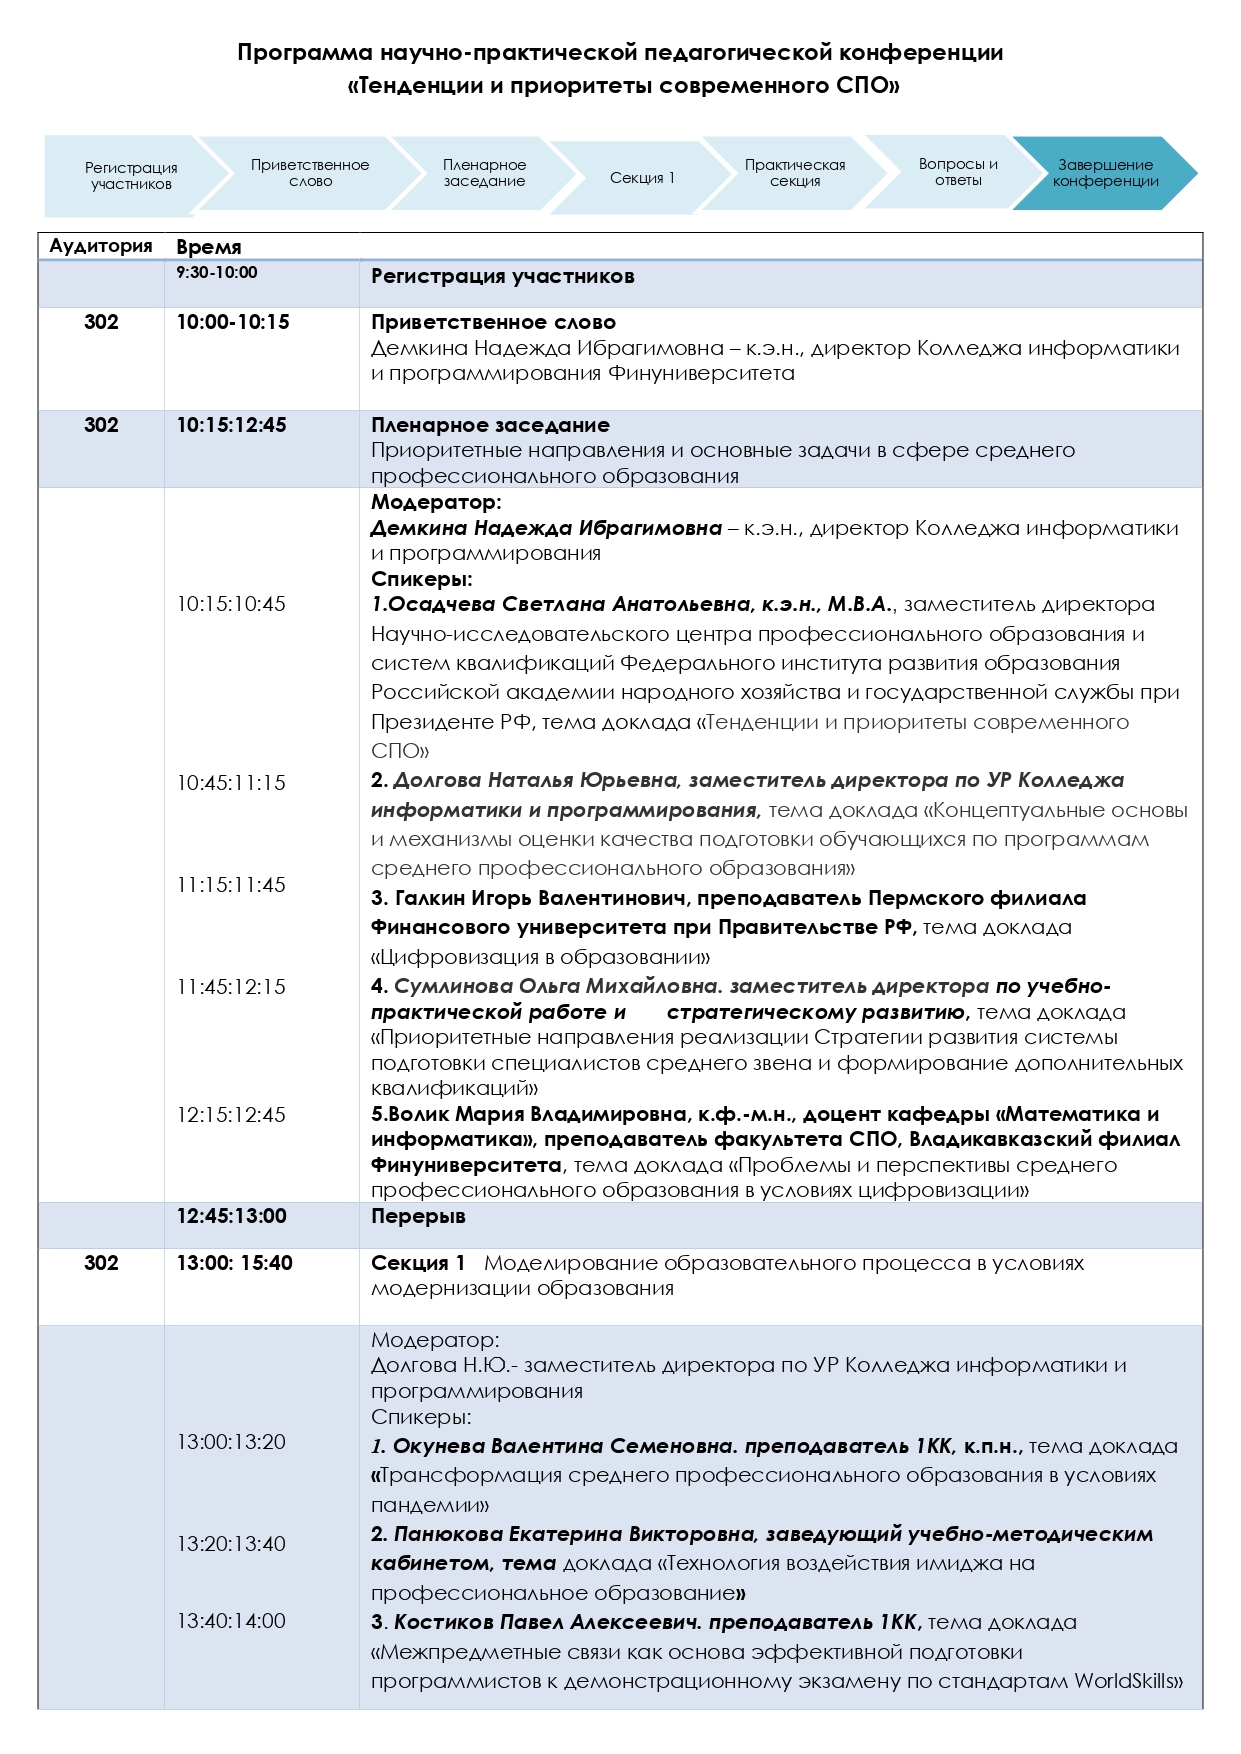 Программа конференции20.05.2021 (002)_page-0002.jpg